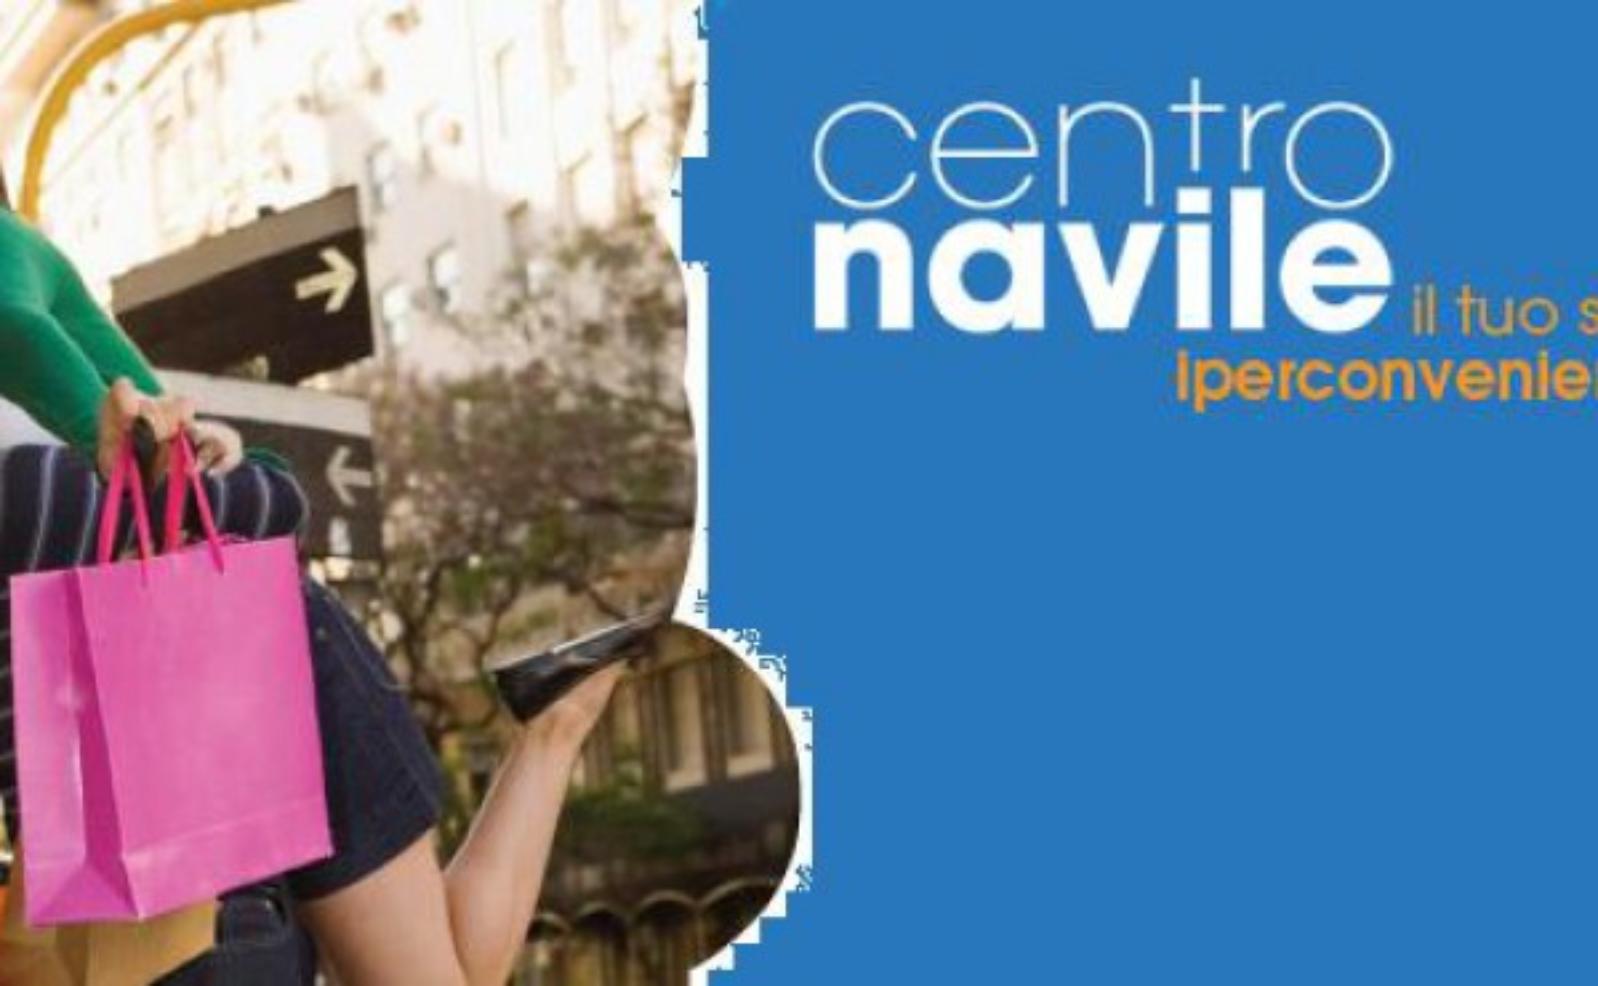 Centro Commerciale - Centro Navile